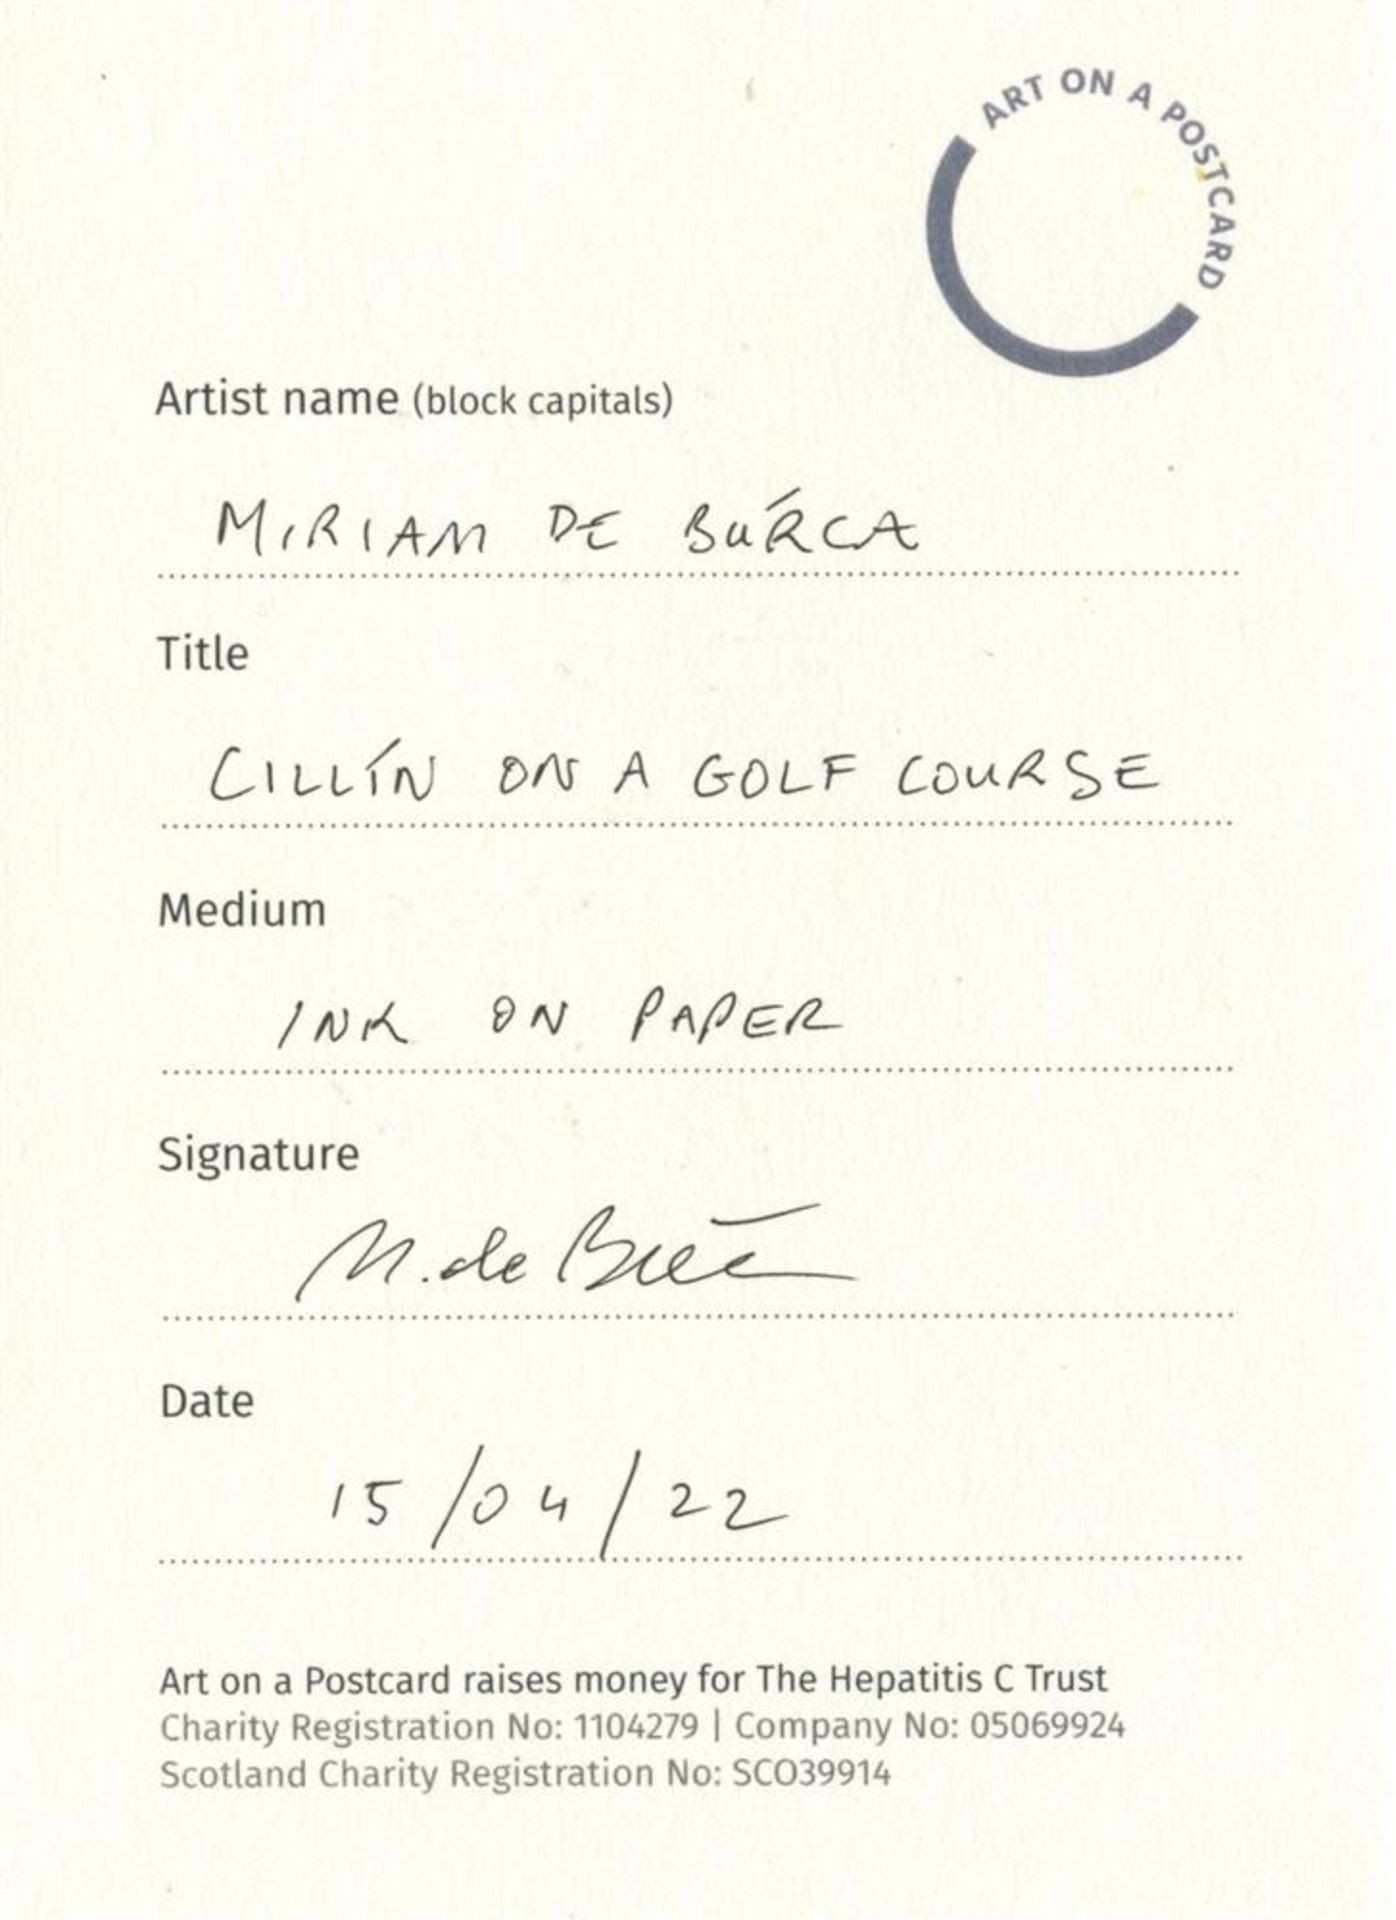 Miriam De Búrca, Cillín on a Golf Course, 2022 - Image 2 of 3